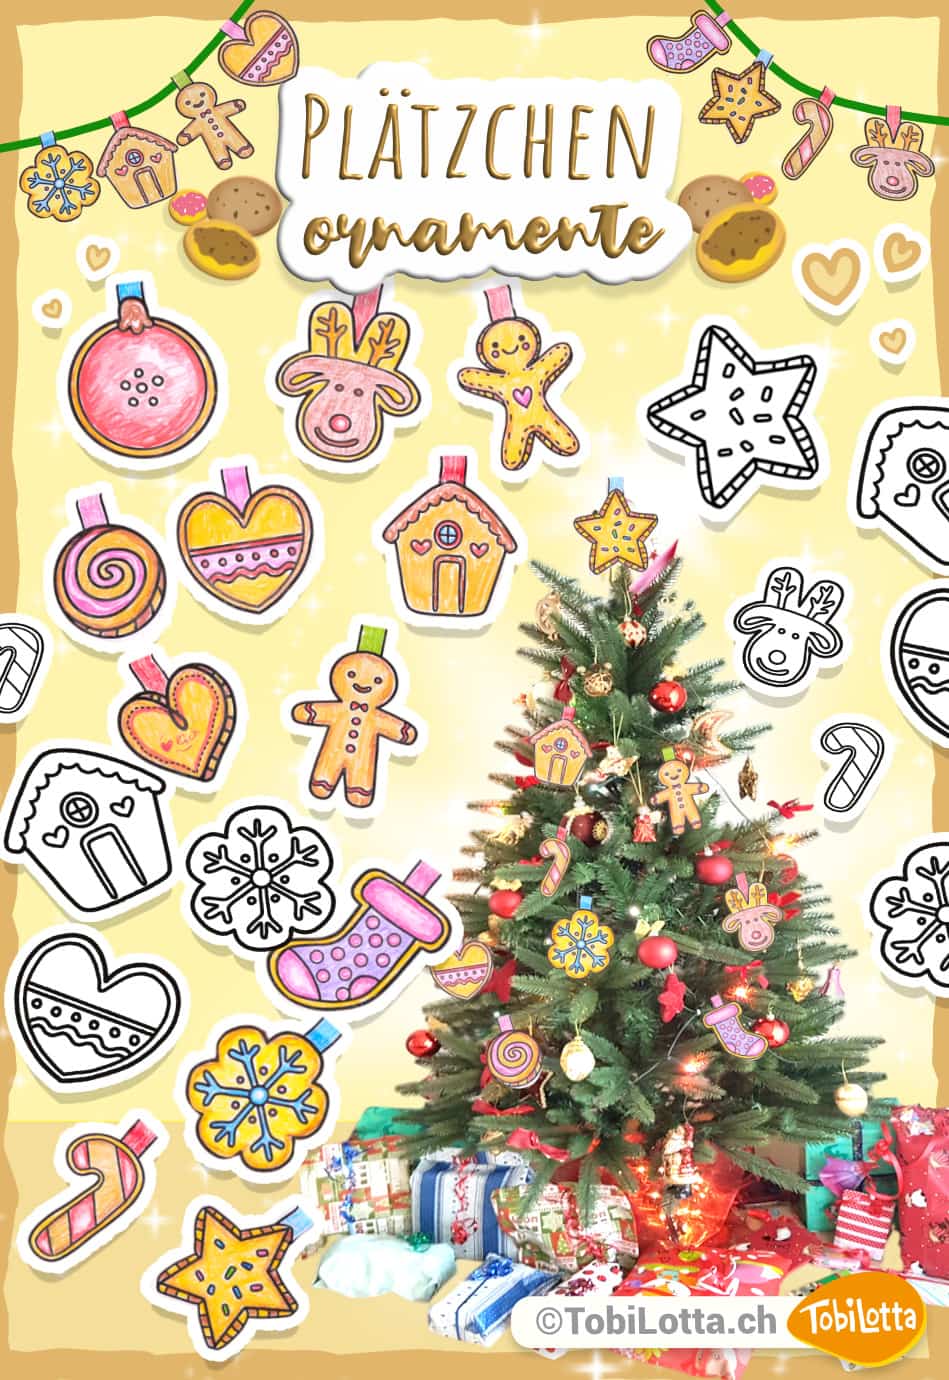 Weihnachtsbaum-Plaetzchen-Ornamente_-Weihnachten-Advent-Bastelvorlage-fuer-das-basteln-mit-kindern-zum-ausdrucken-pdf-vorlagen-eduki-advent-diy-geschenke-basteln-kekse